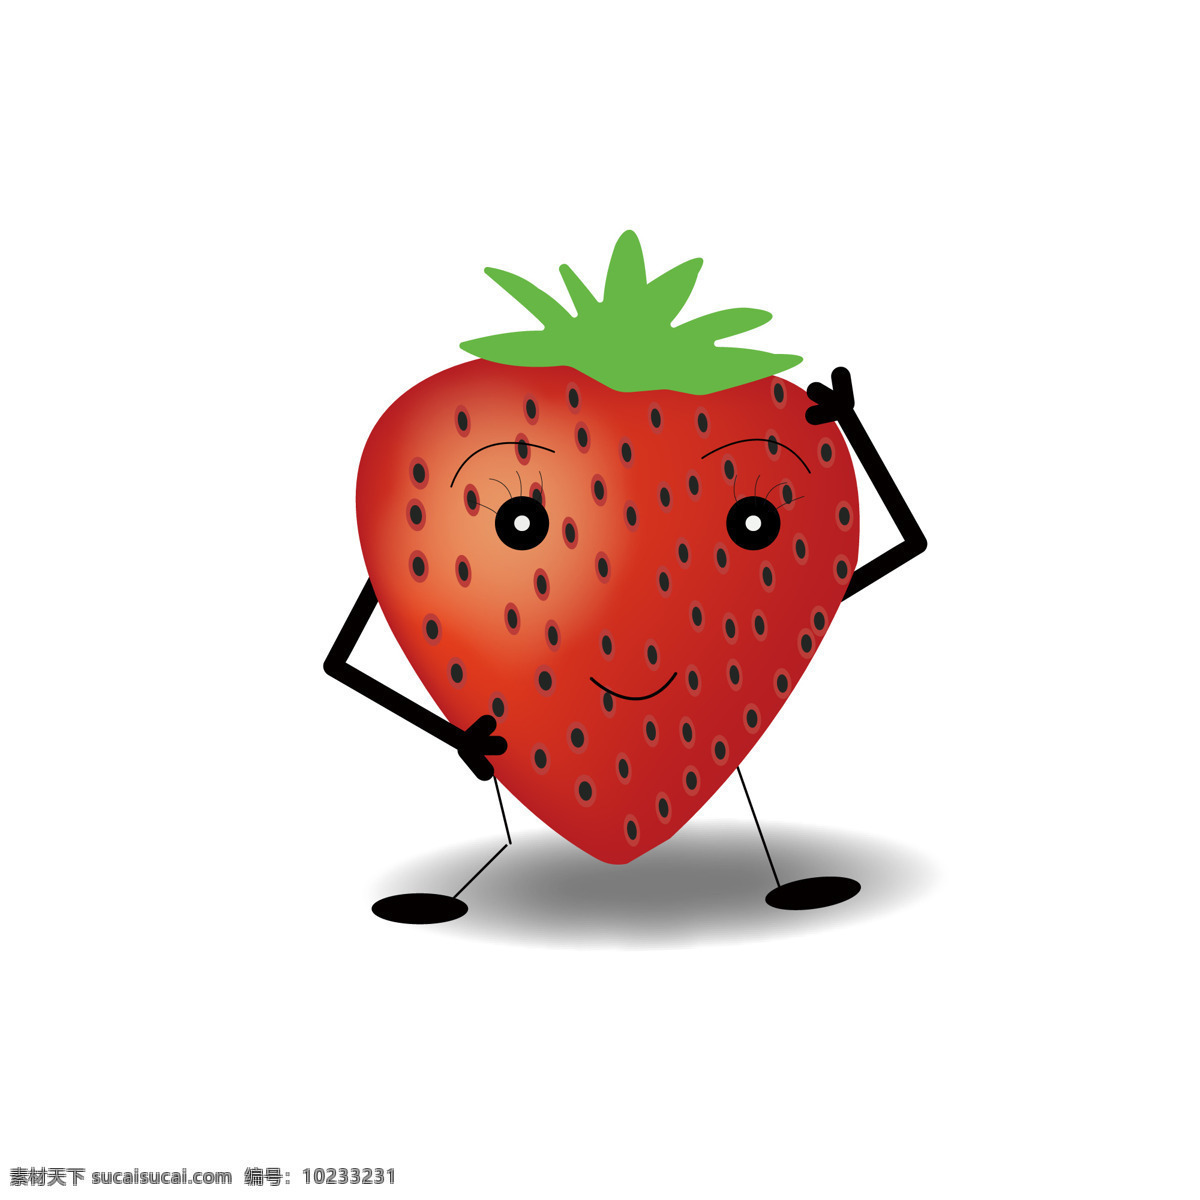 草莓 水果 矢量 跳舞的水果 插画 生活百科 餐饮美食